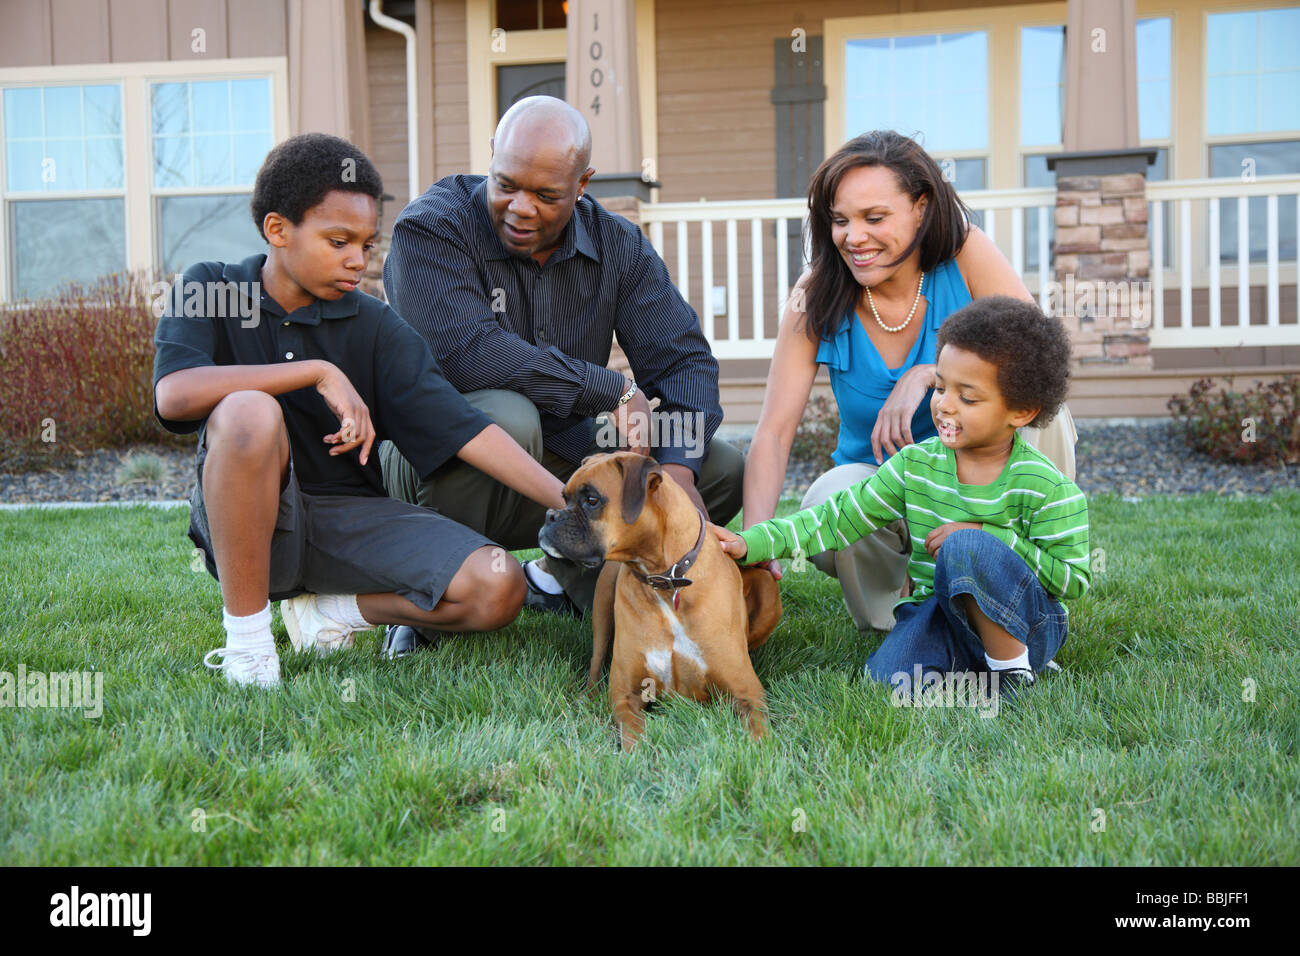 Famiglia americana africana petting cane nella parte anteriore della casa Foto Stock